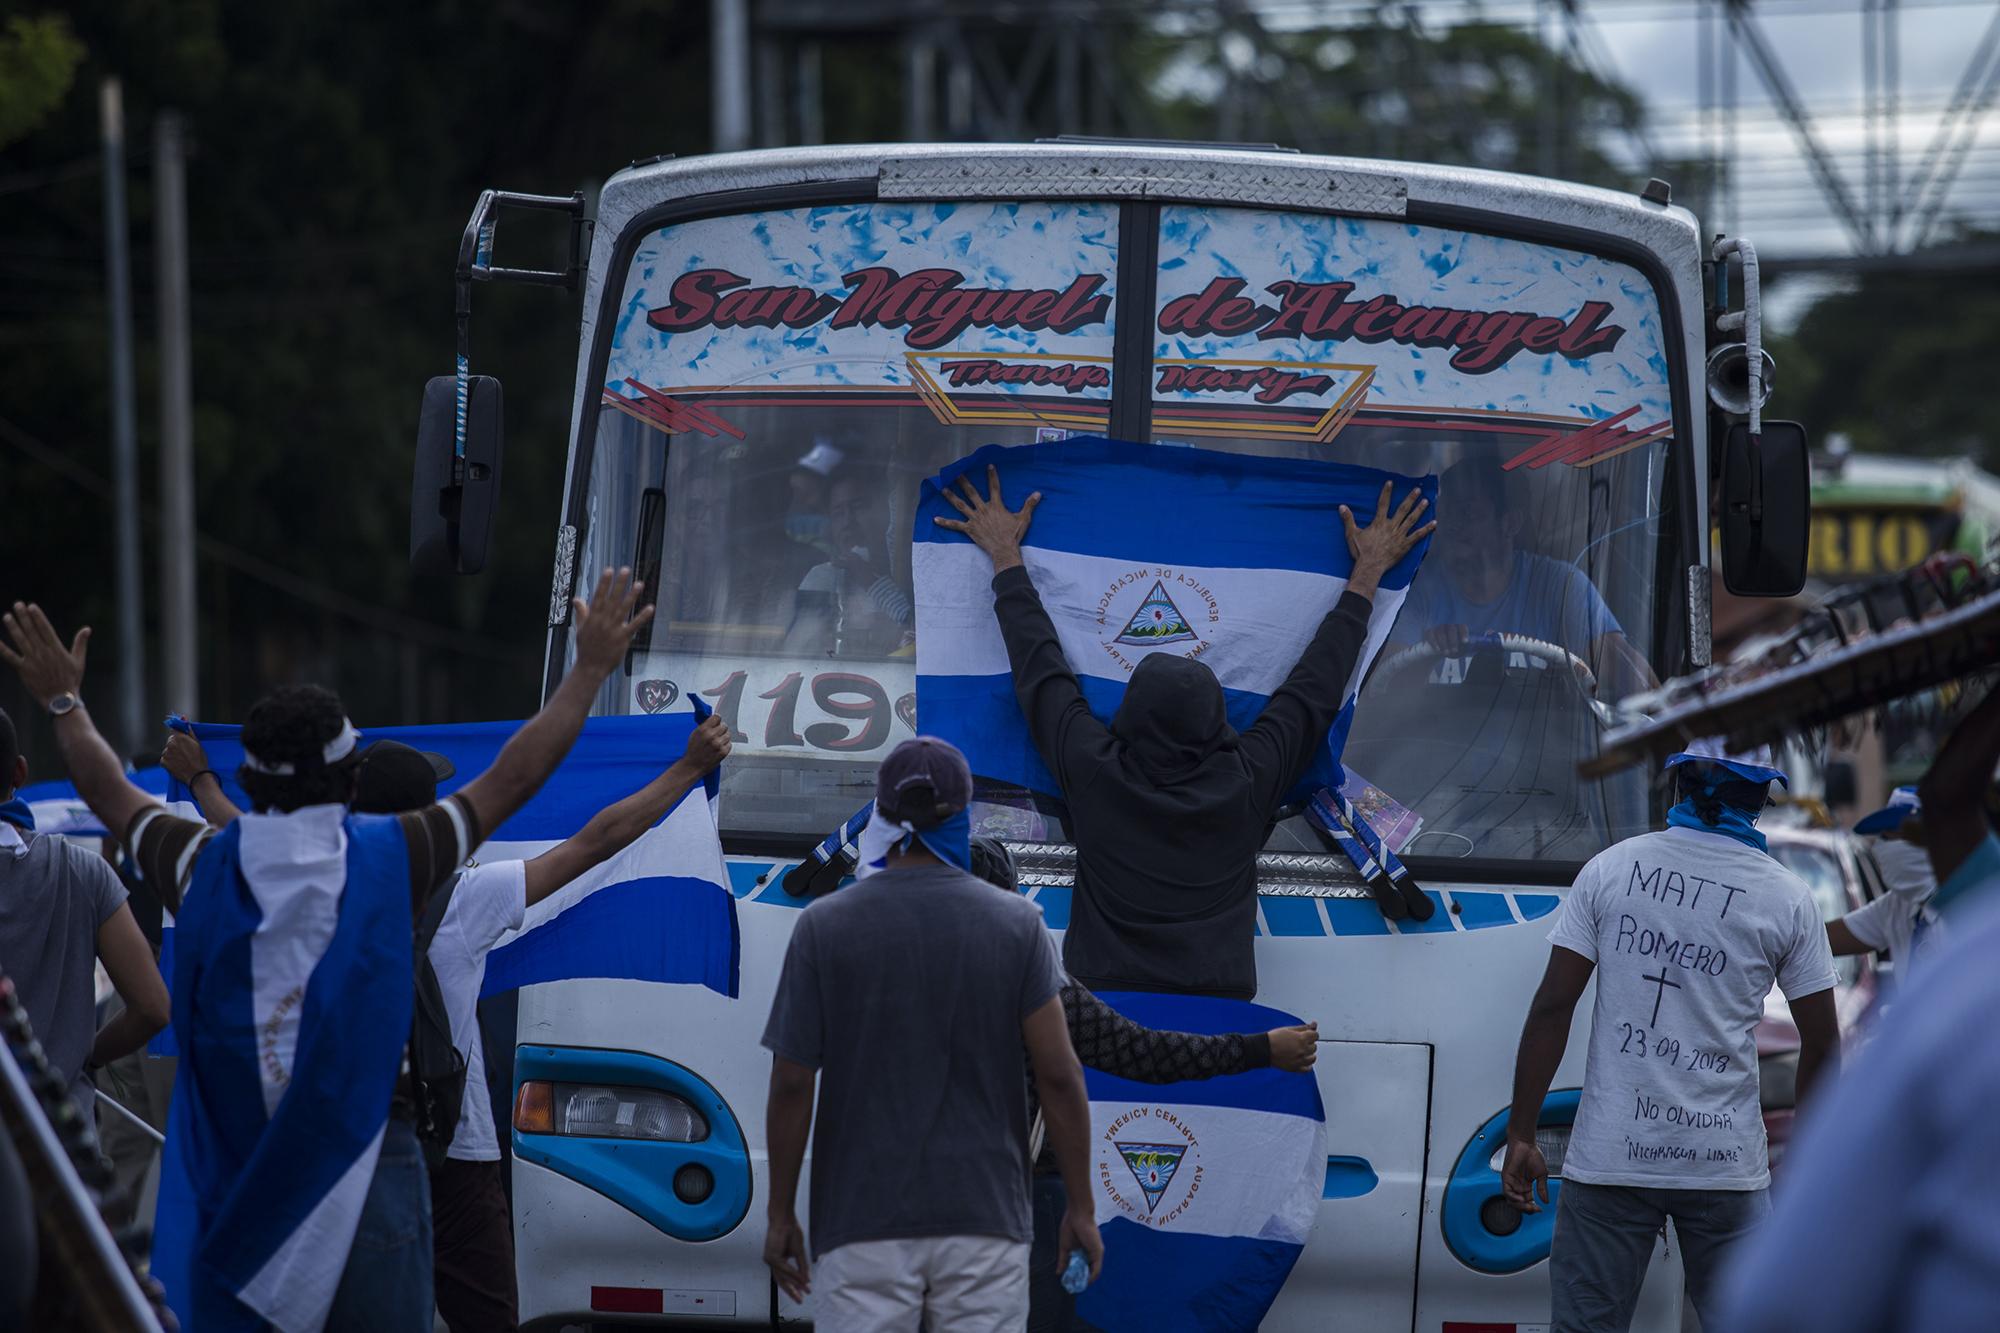 Un grupo de al menos 100 personas realizó una protesta que se convirtío en plantón, el 26 de septiembre, frente a la UCA, en la ciudad de Managua. La policía bloqueó las calles para que la manifestación contra Daniel Ortega no pudiera avanzar. Finalmente, tras un par de horas, se disolvió. Foto: Víctor Peña.